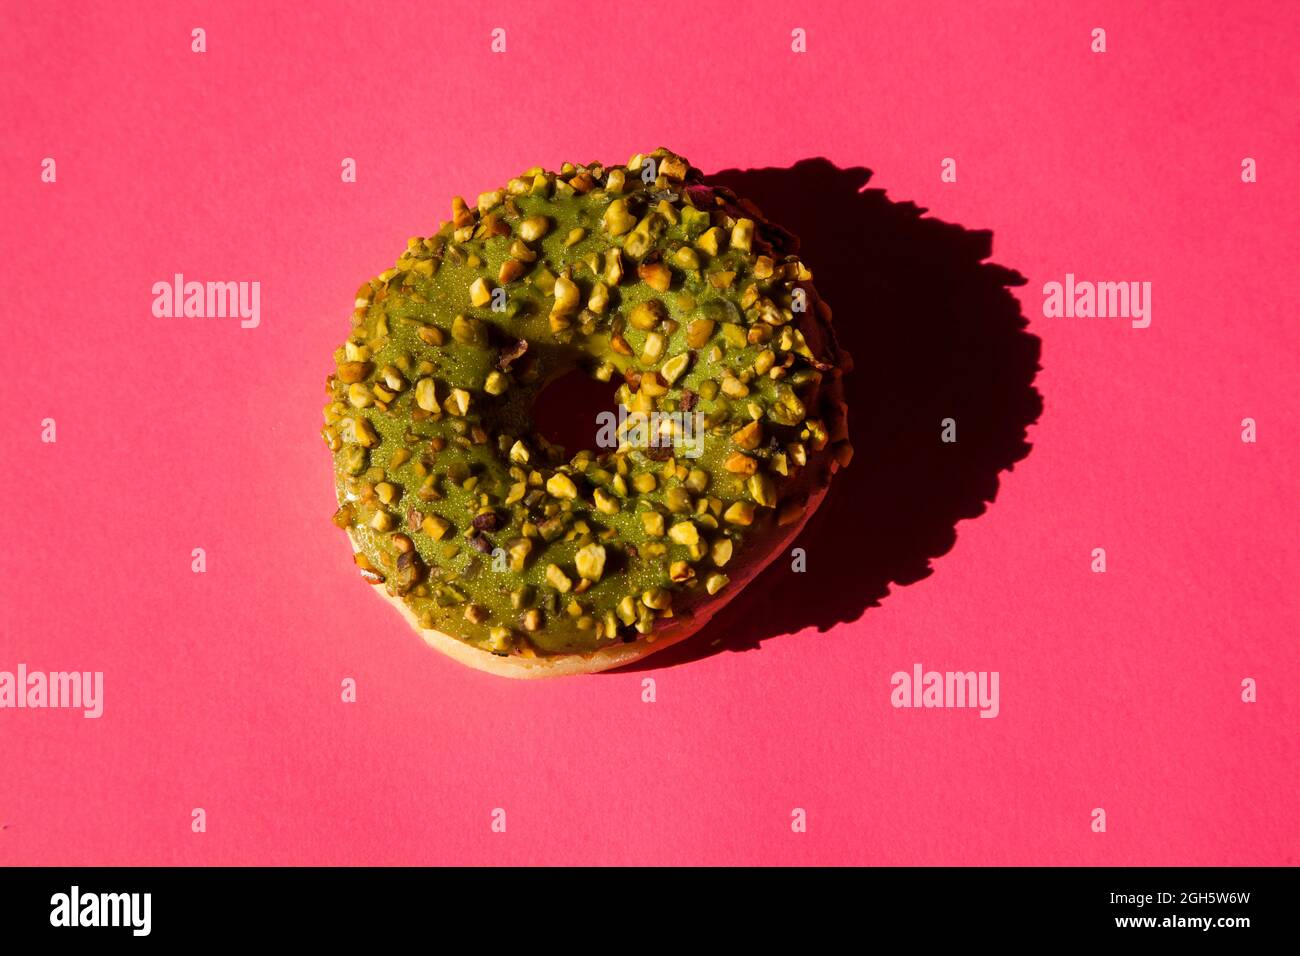 Vista superior de un donuts revestido con un azúcar verde con nueces sobre fondo rosa Foto de stock